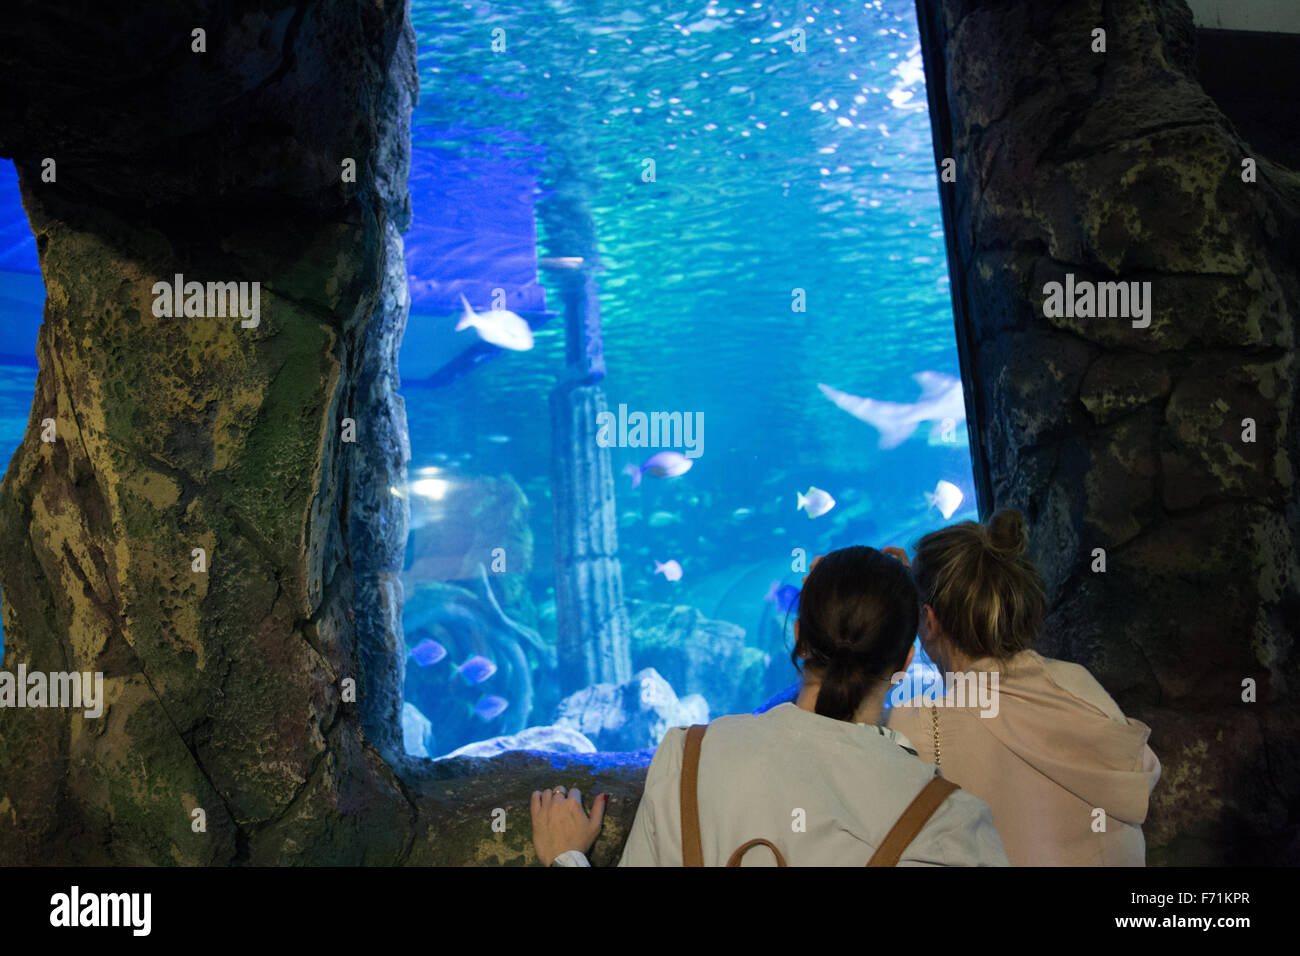 sea life sydney aquarium Stock Photo